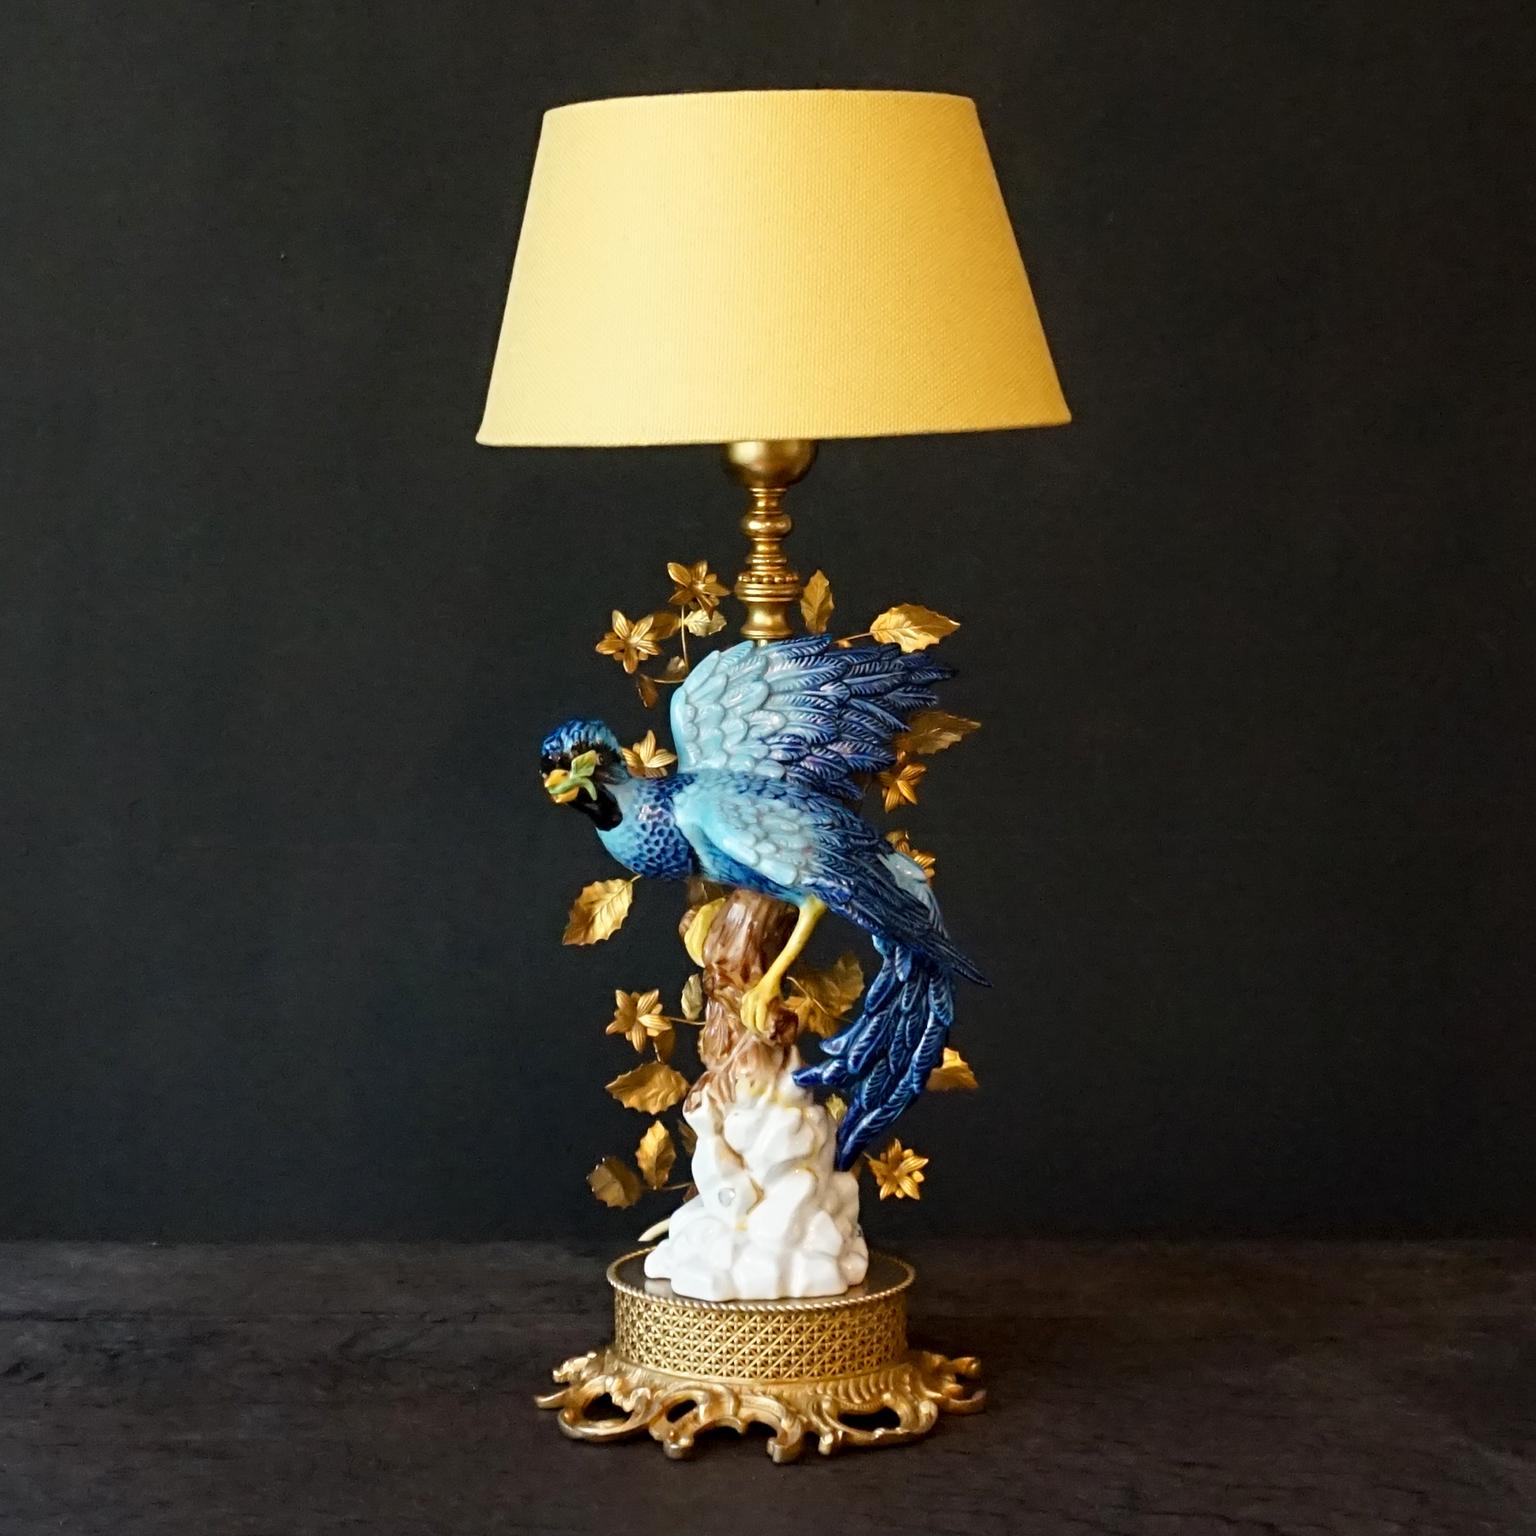 Lampe de table spectaculaire représentant une base de rocher et une Branch en porcelaine peinte à la main, surmontée d'un oiseau bleu tropical. Orné de branches et de feuilles de tole, marqué et réalisé par Giulia Mangani, vers 1970.

L'oiseau et le